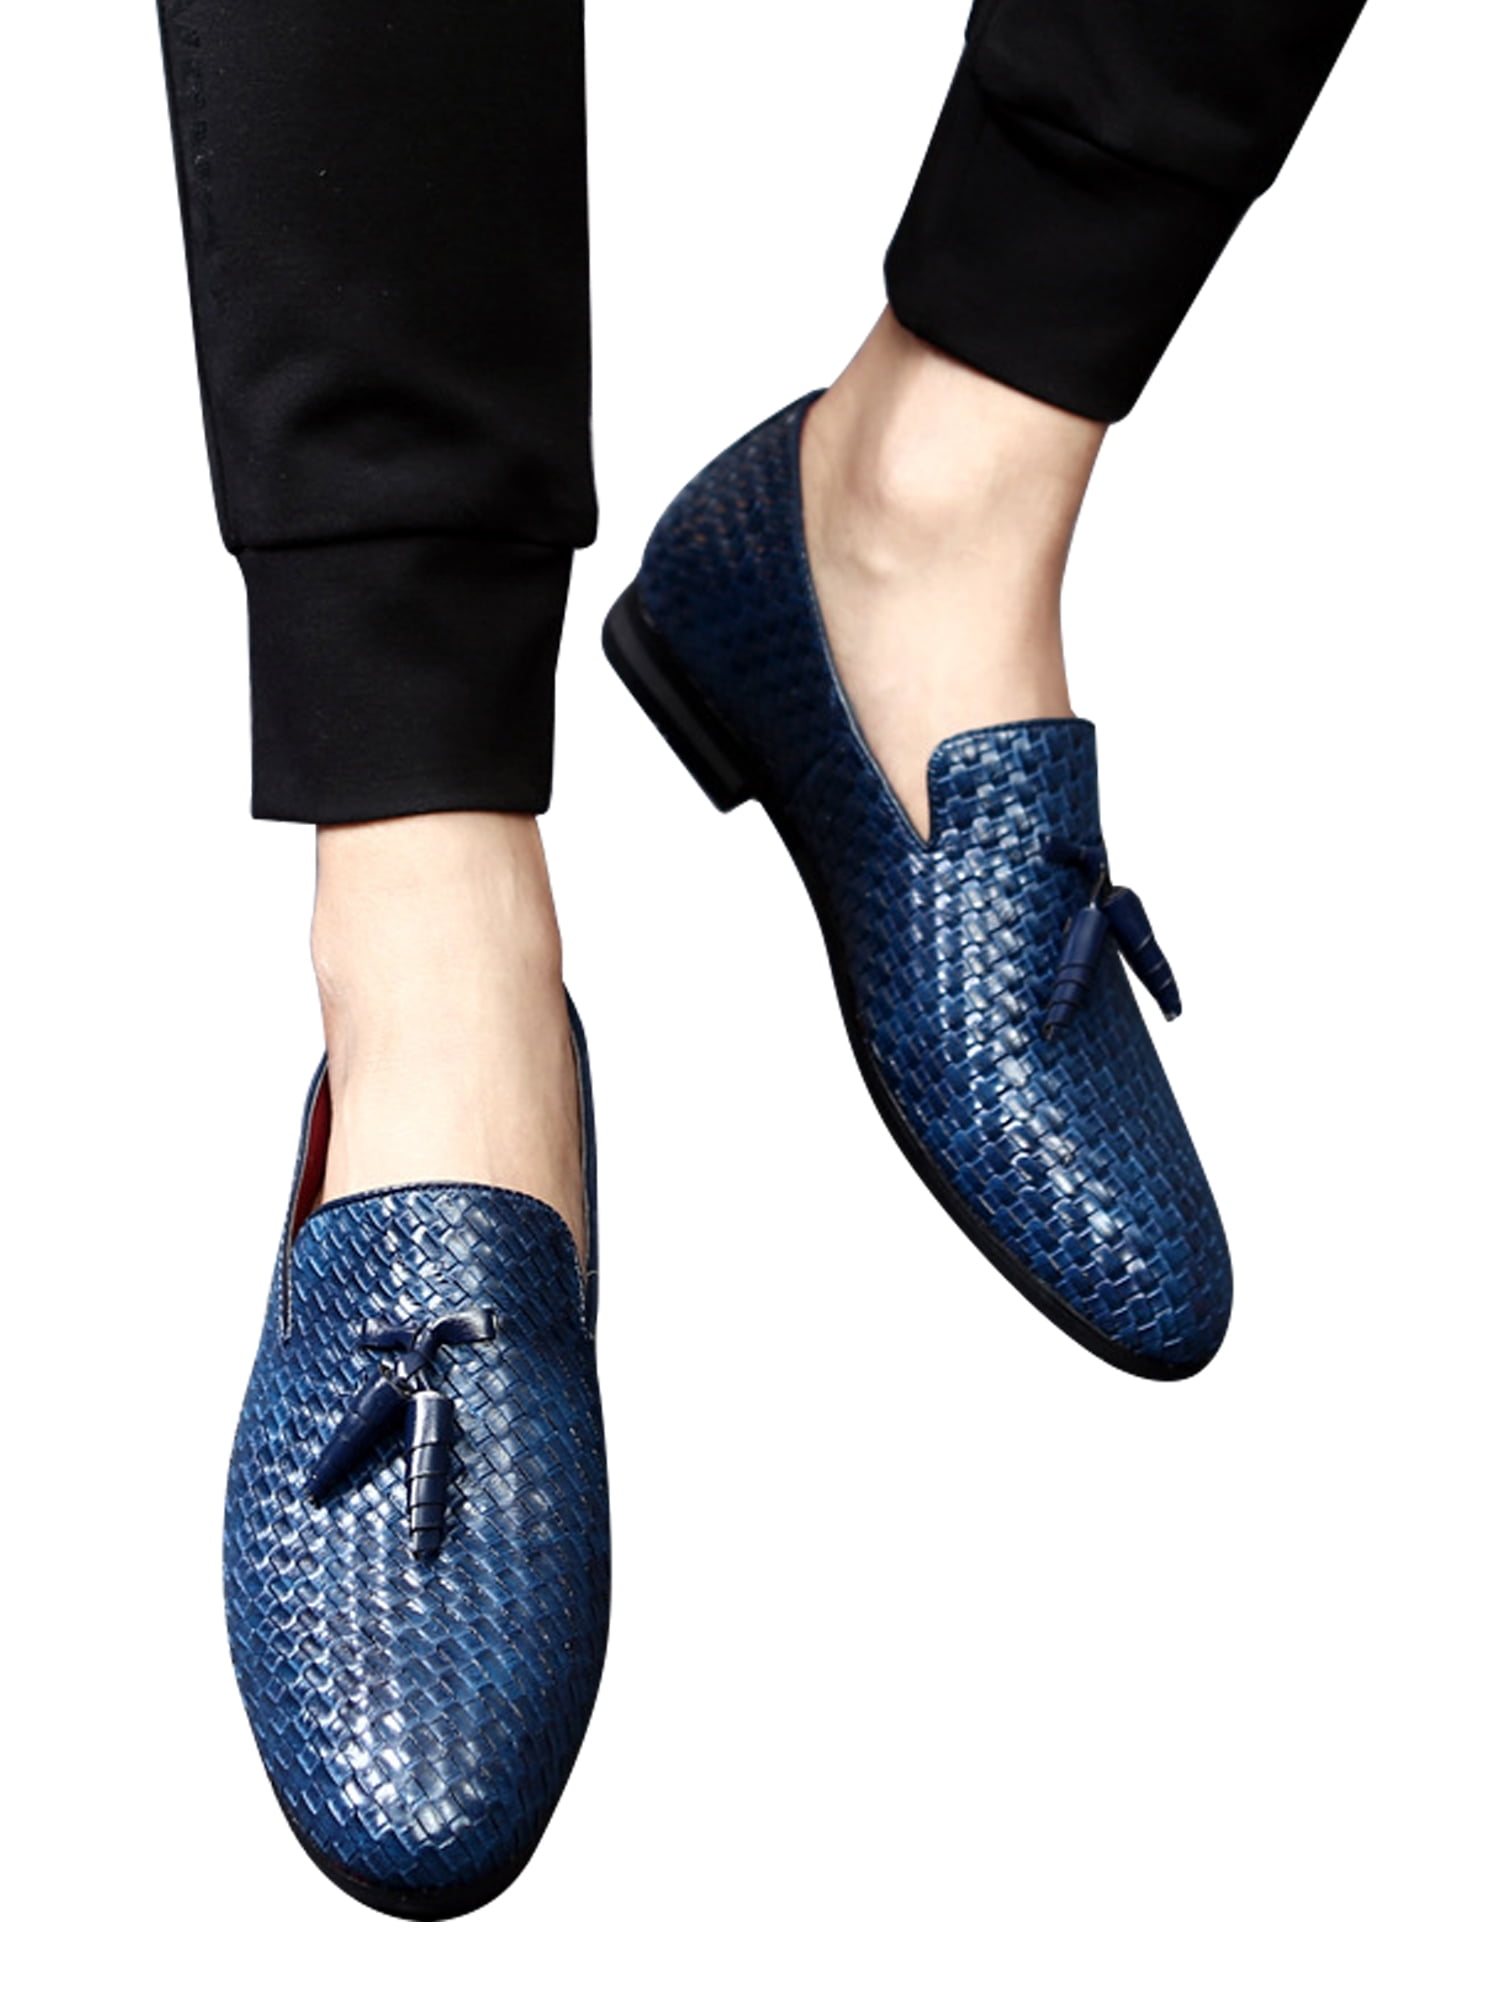 Penge gummi Mængde penge Kina Woobling Men's Gentleman Braided Loafers Leather Shoes Driving - Walmart.com